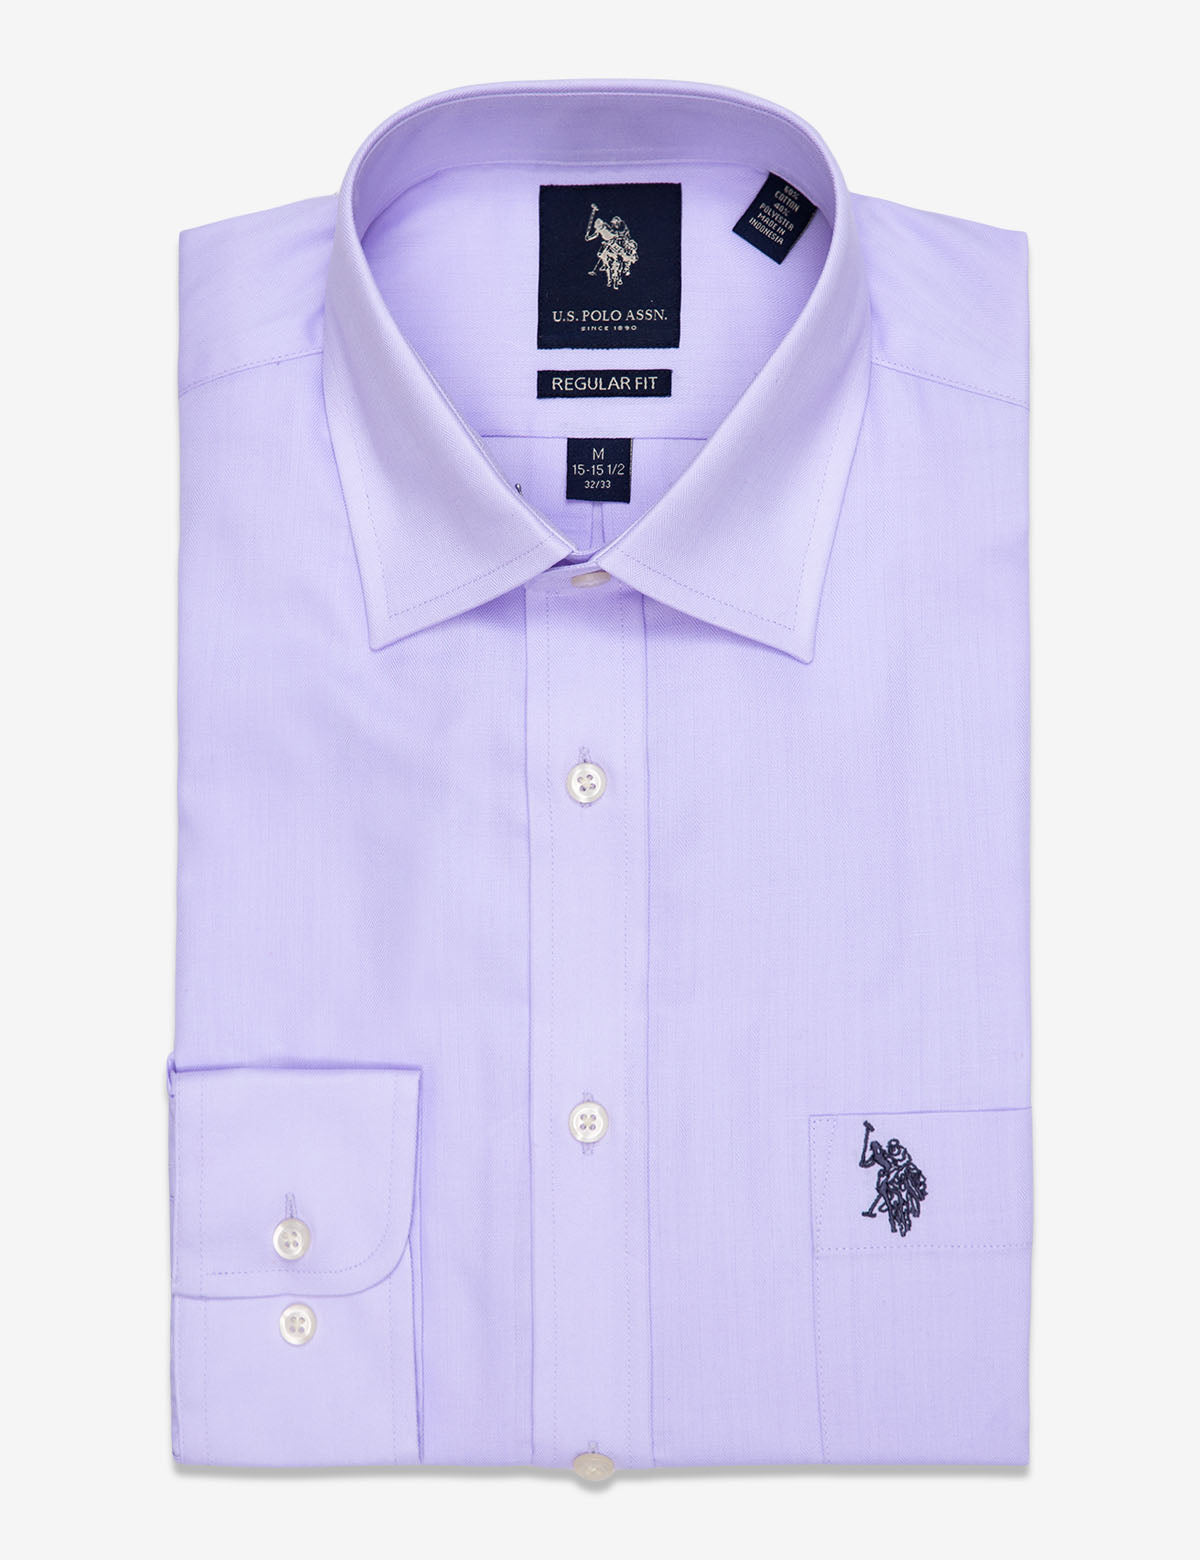 purple polo dress shirt